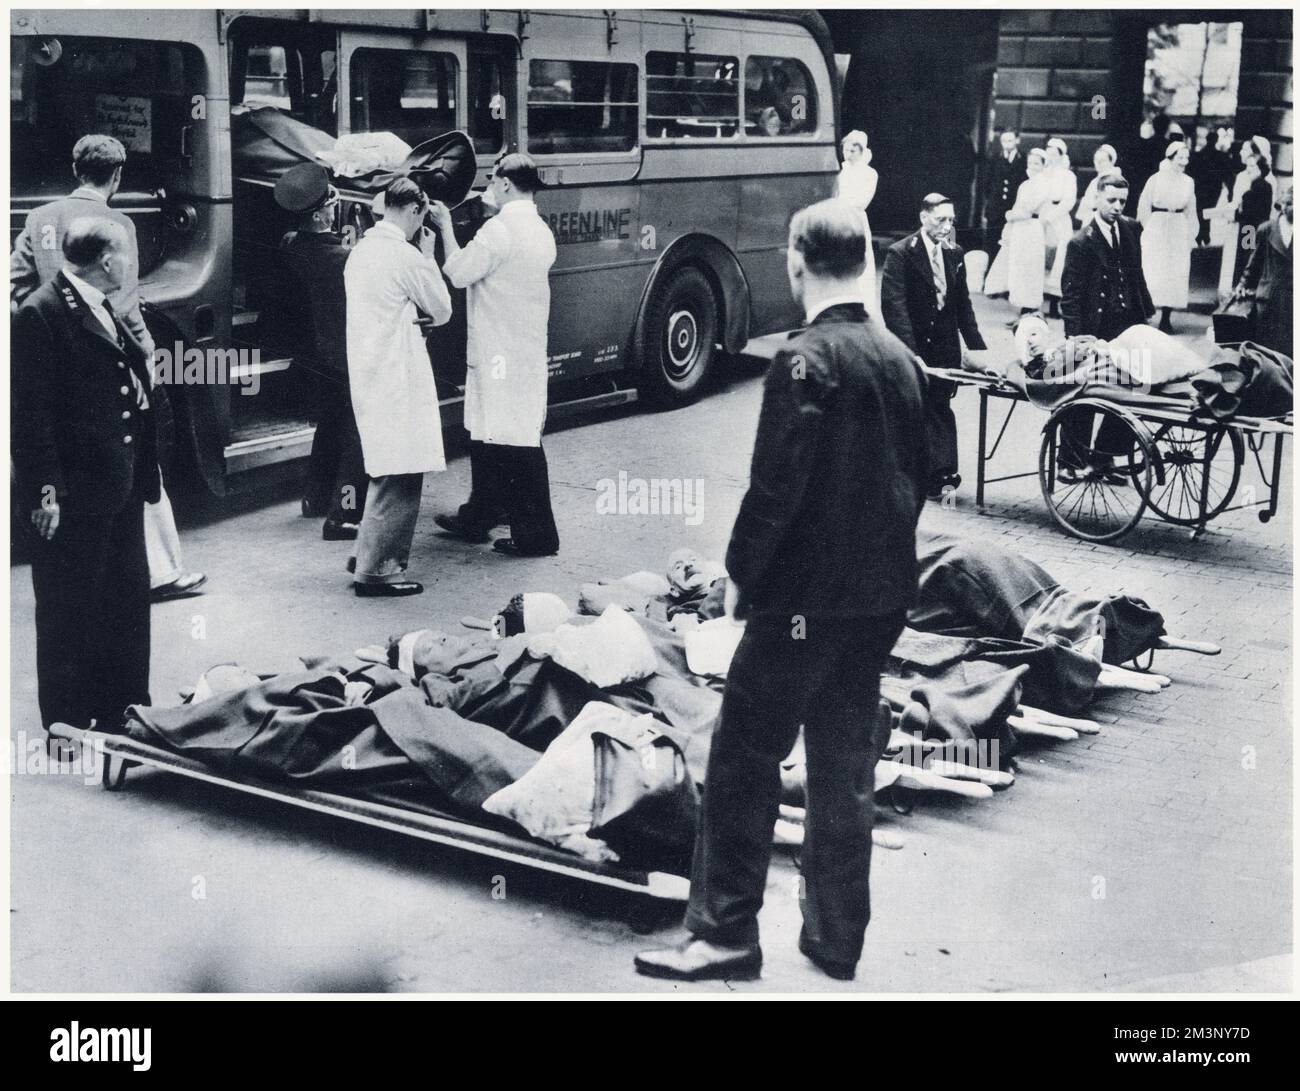 Evacuazione di pazienti ospedalieri da un ospedale londinese all'inizio della seconda guerra mondiale. Per l'evacuazione dei pazienti nel paese, le carrozze sono state temporaneamente convertite in ambulanze a motore. Foto Stock